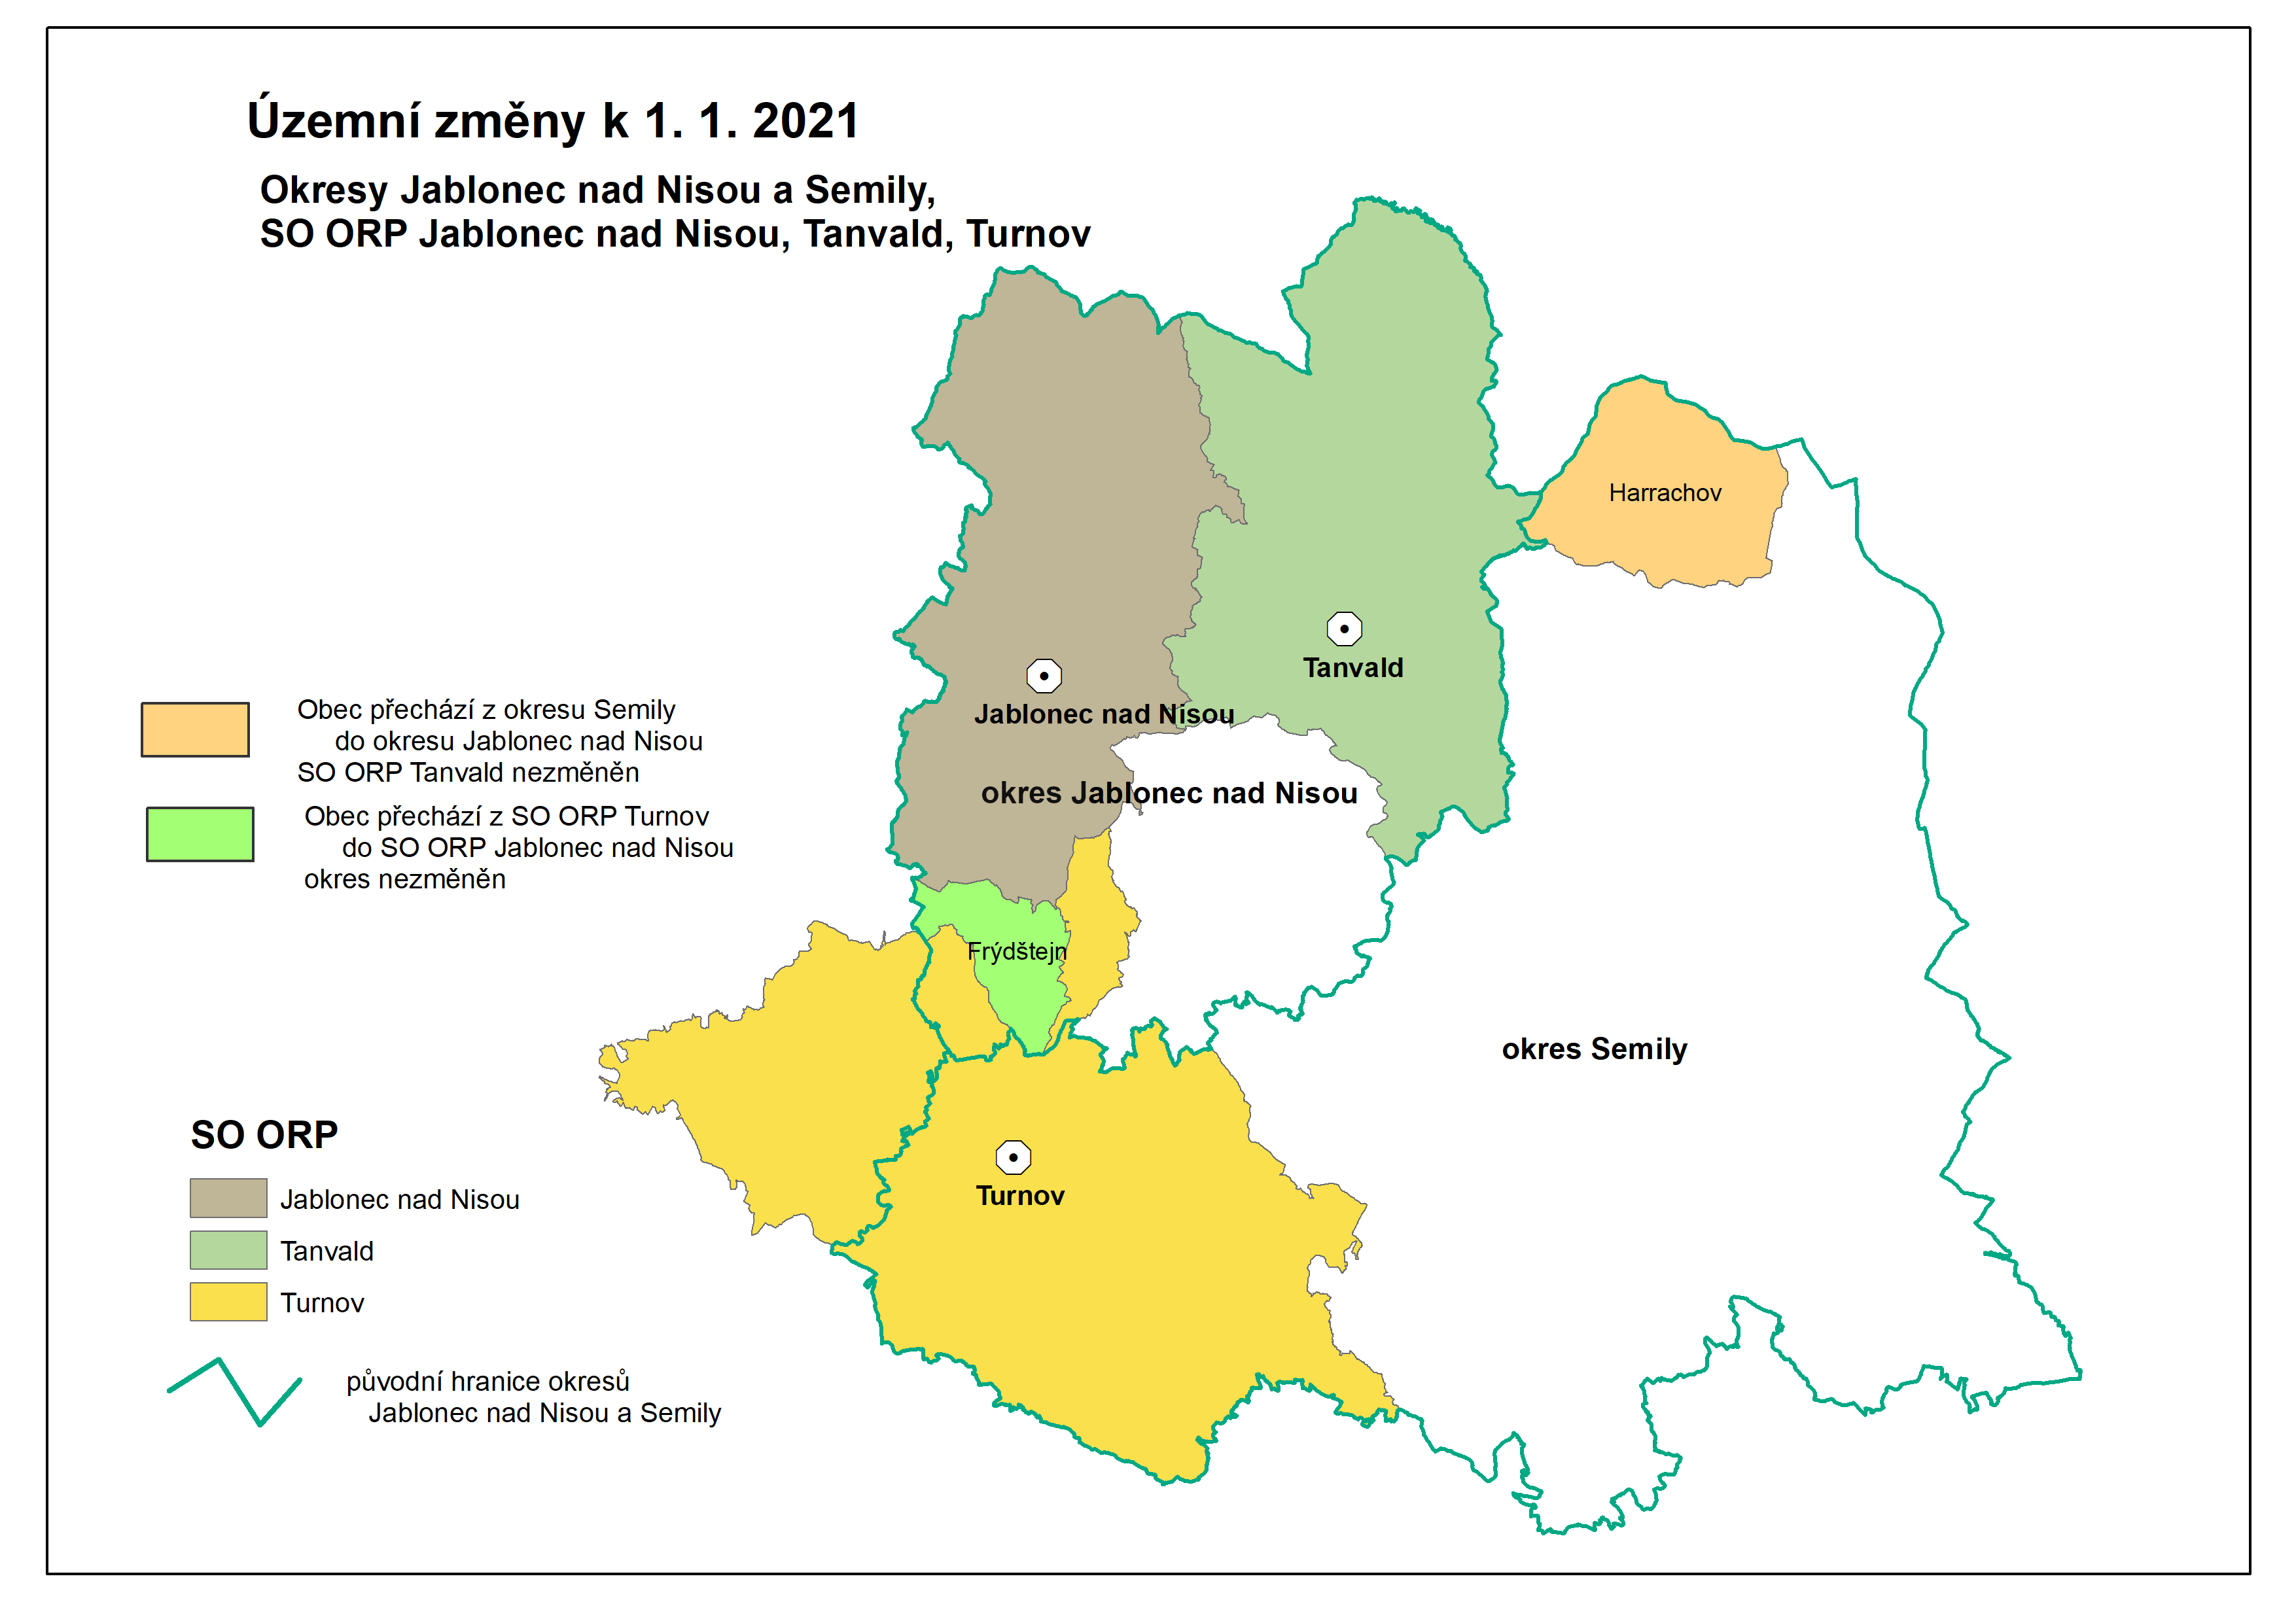 Kartogram - Územní změny v okresech Jablonec nad Nisou a Semily k 1. 1. 2021 